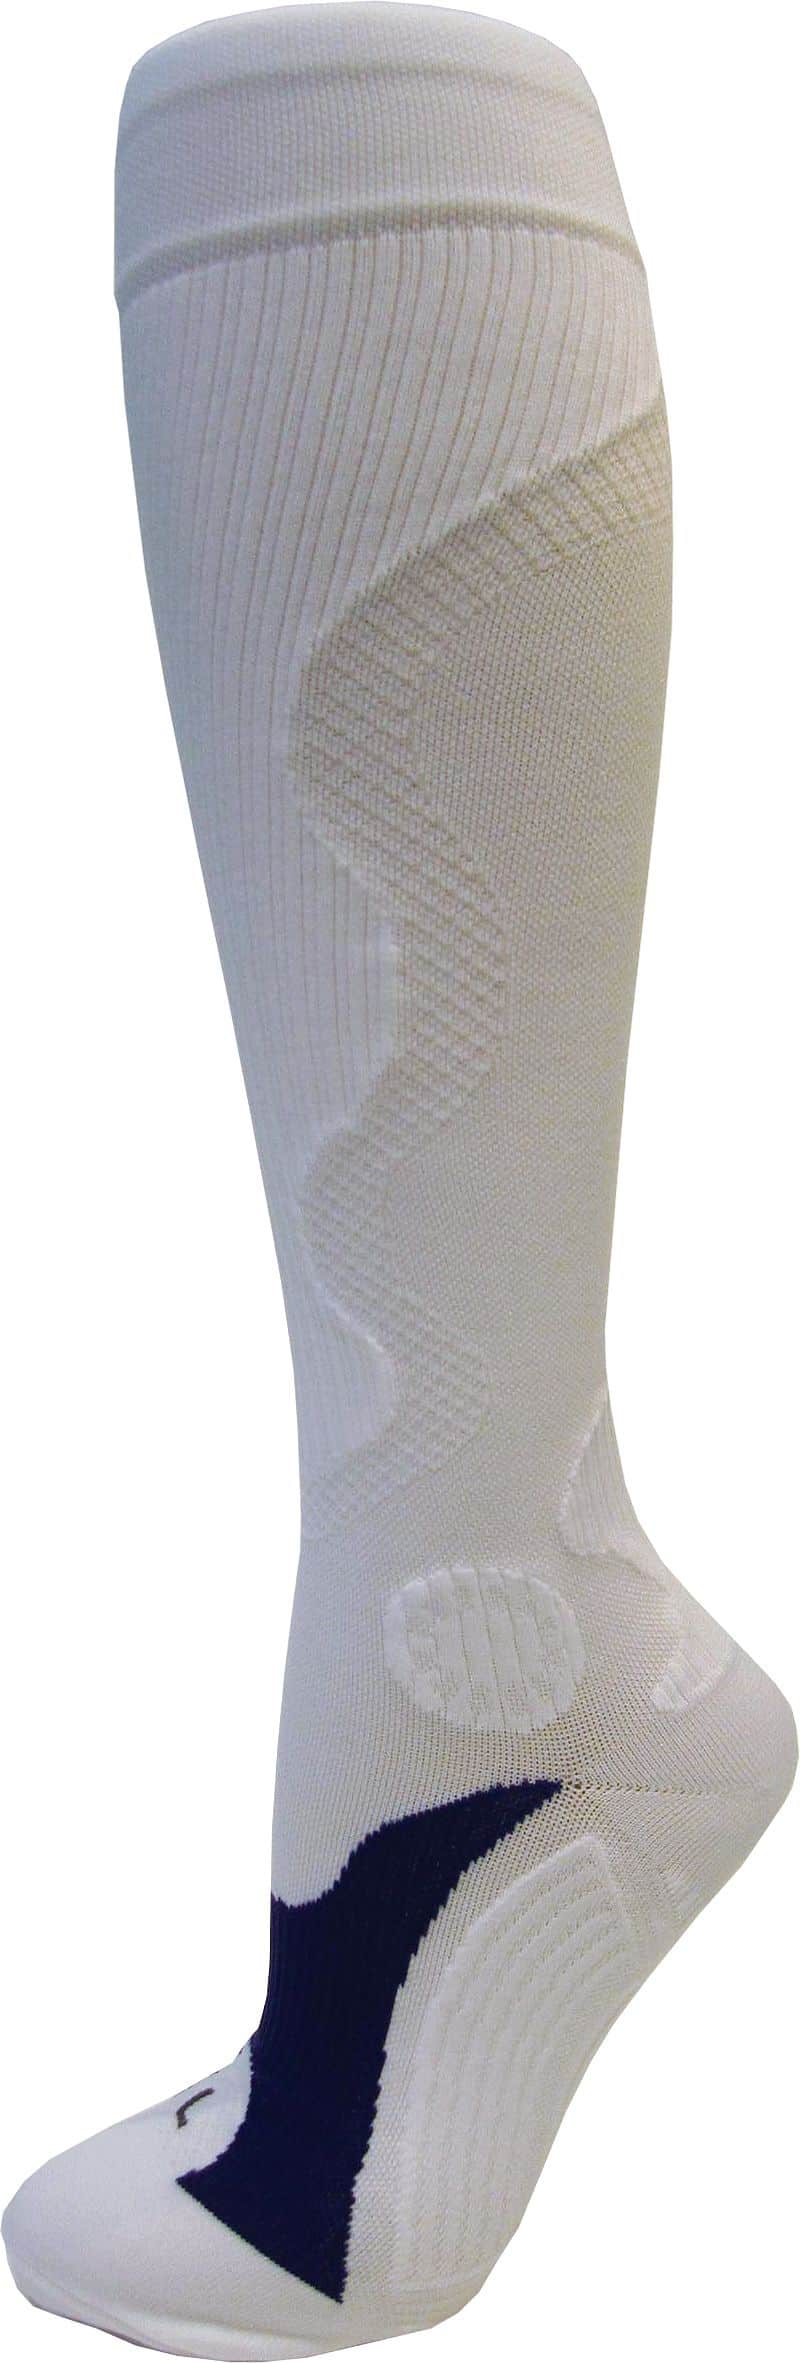 Rulyt Kompresní sportovní ponožky WAVE, bílé Bota velikost: S